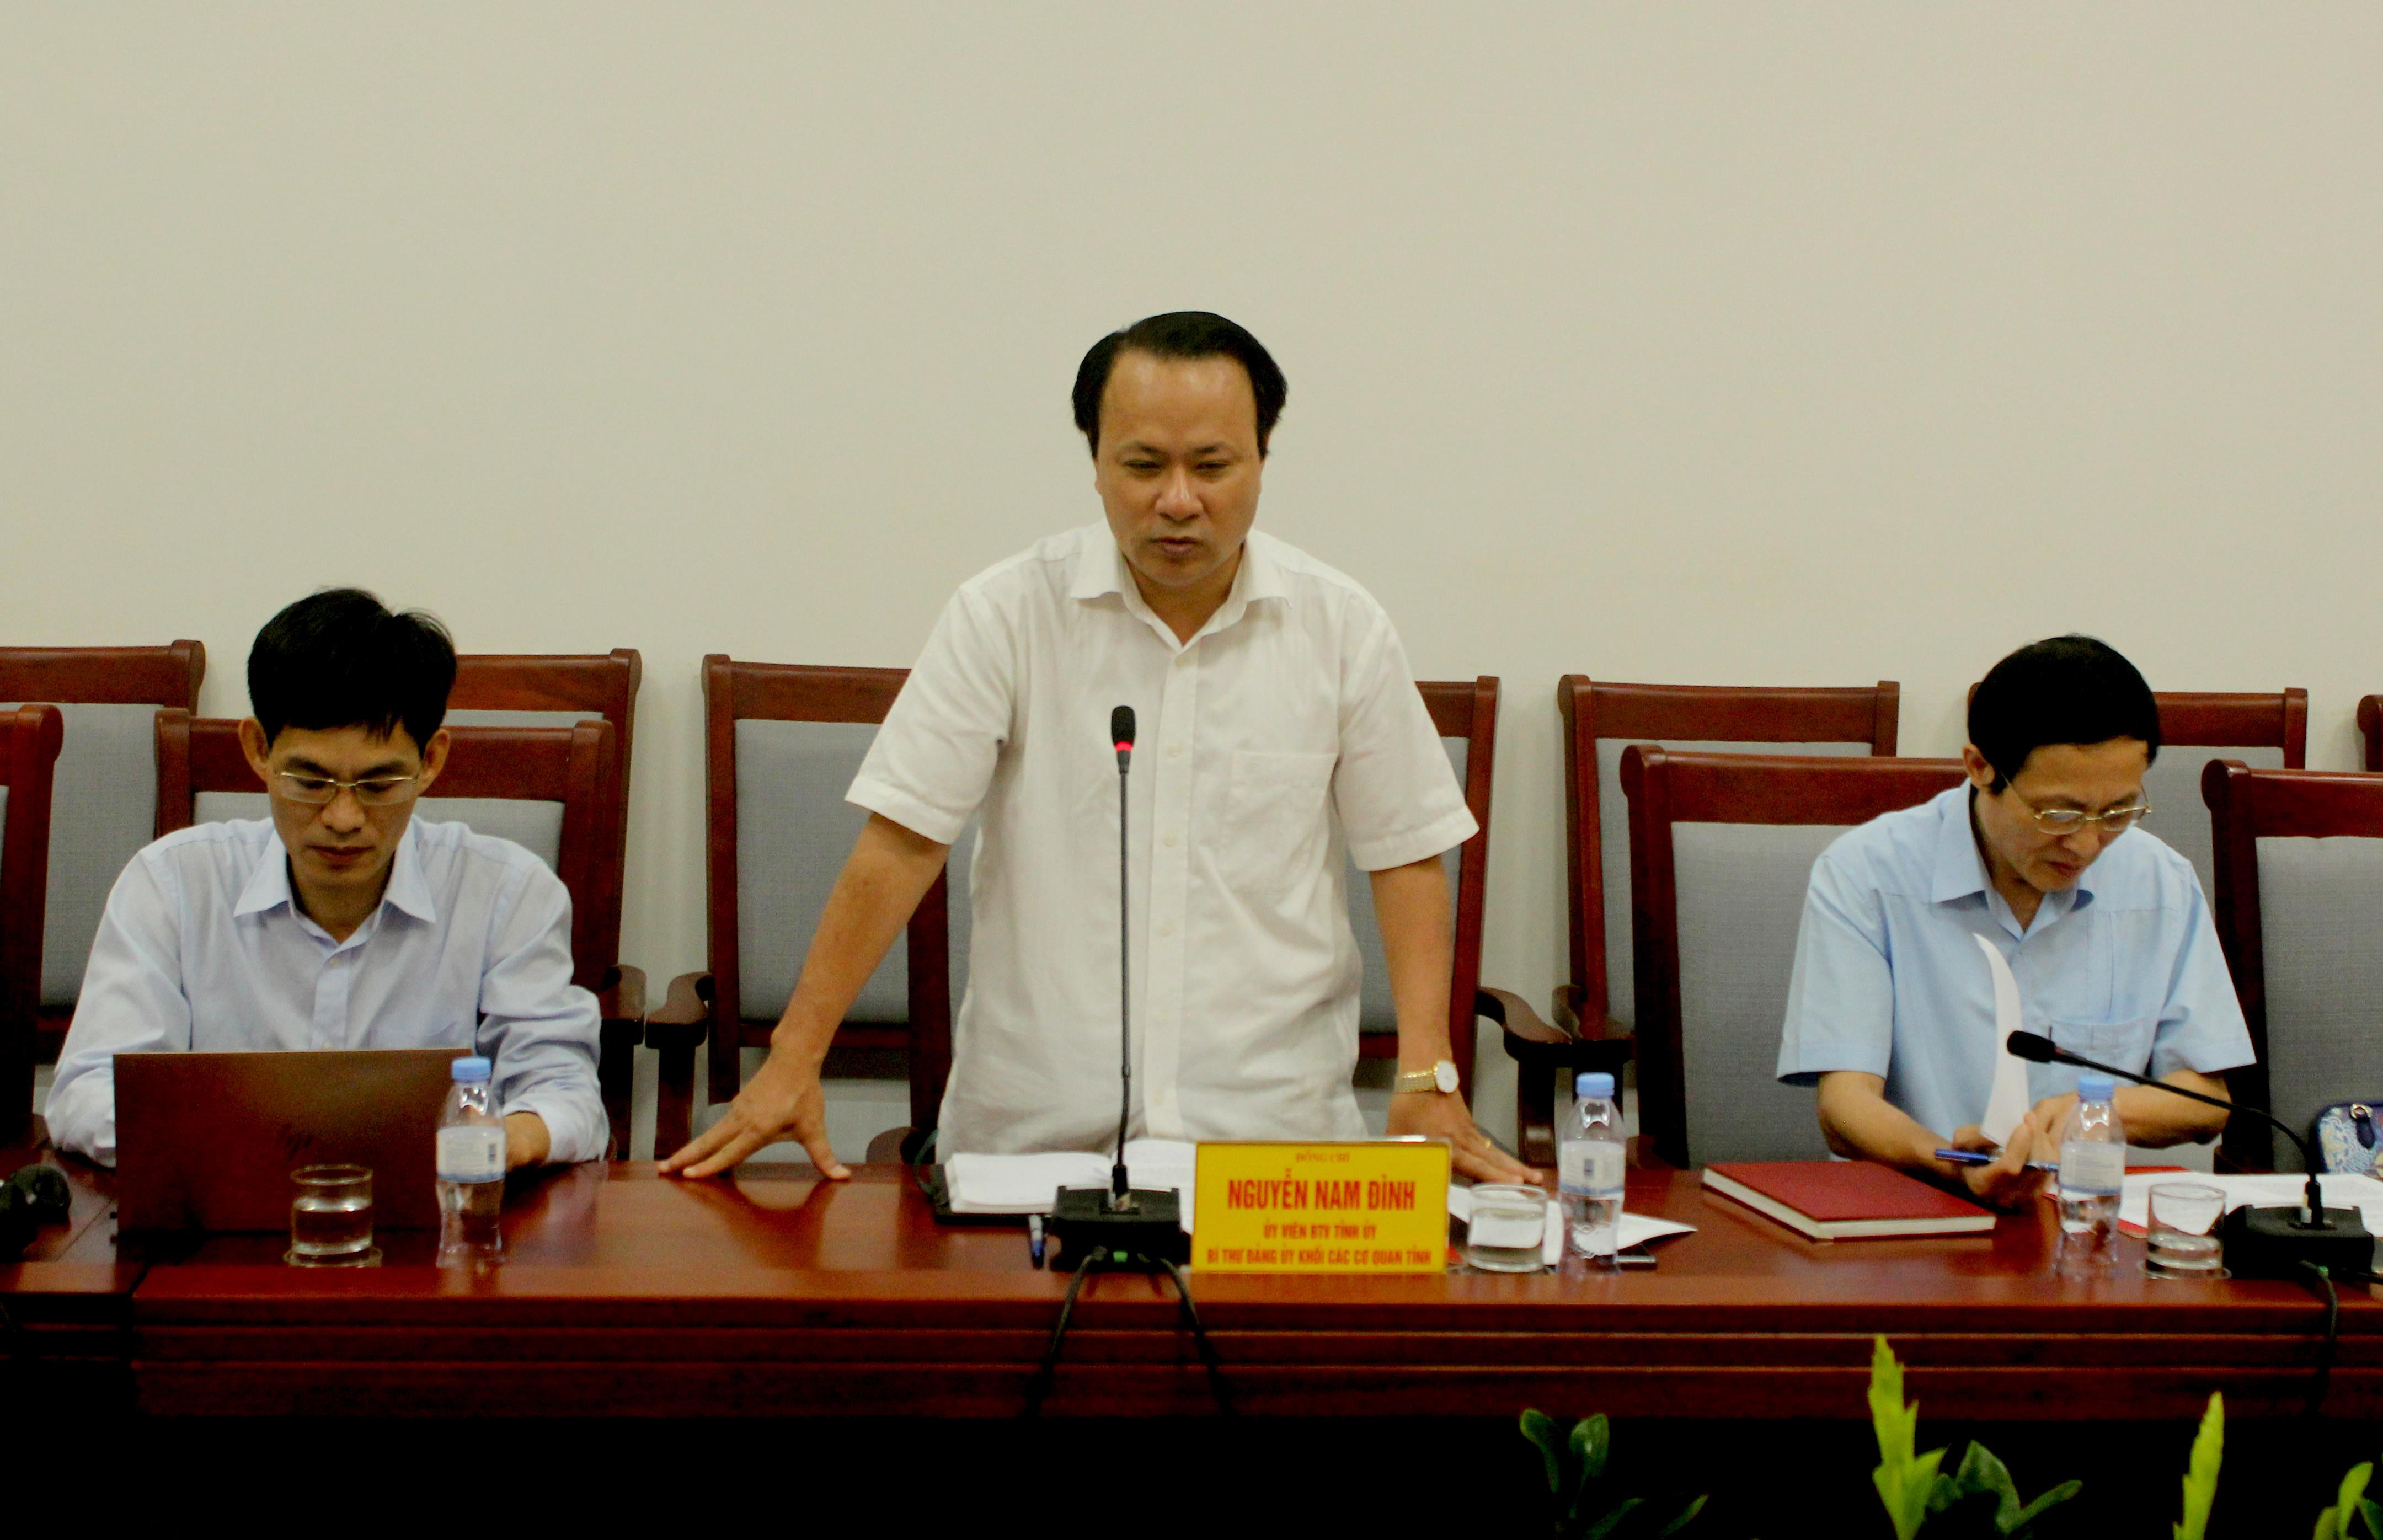 Đồng chí Nguyễn Nam Đình phát biểu tại cuộc làm việc 